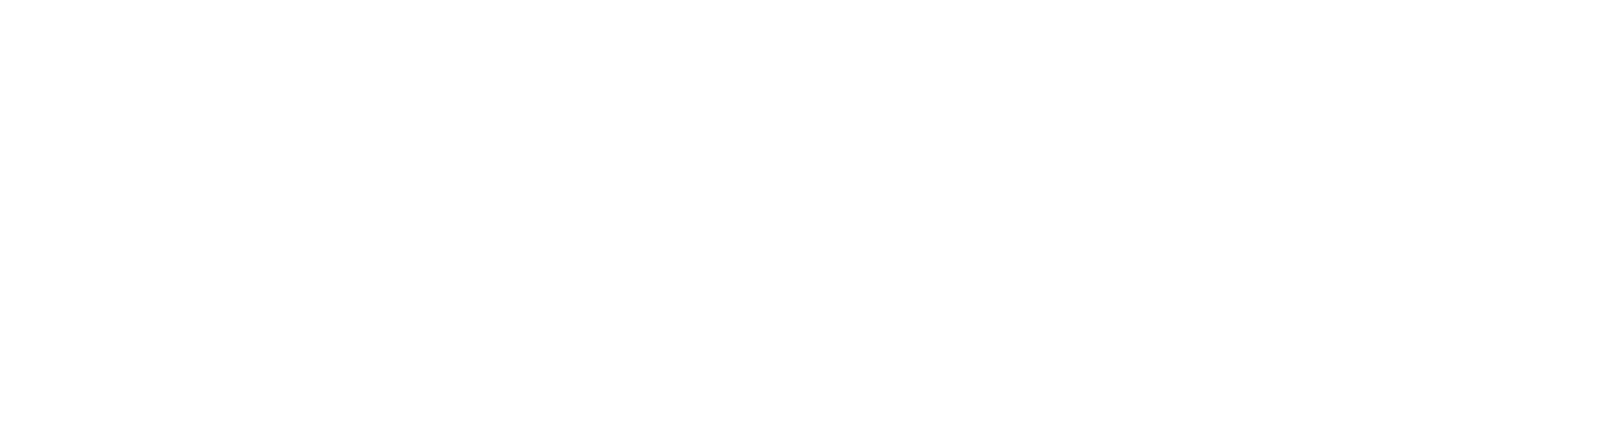 Micron Technology logo grand pour les fonds sombres (PNG transparent)